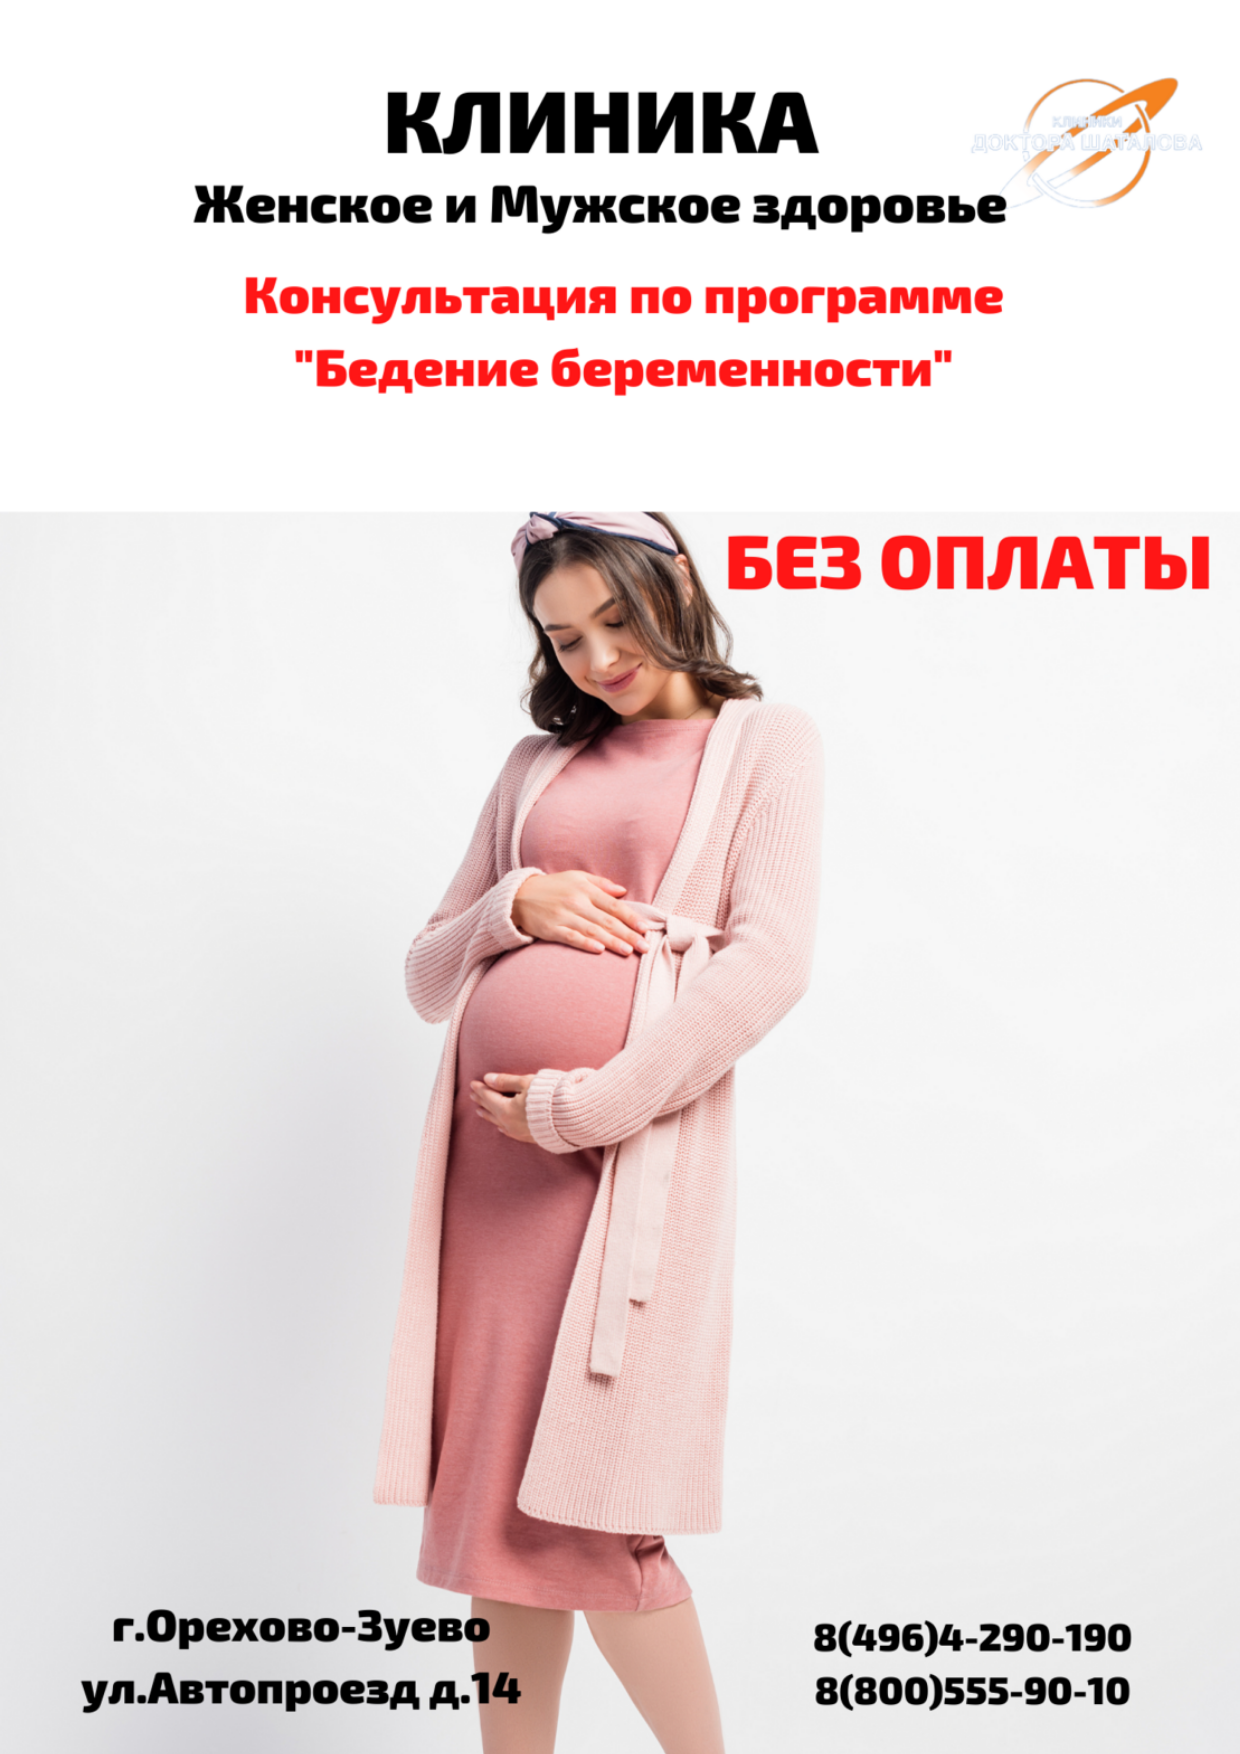 Консультация по программе "Ведение беременности"